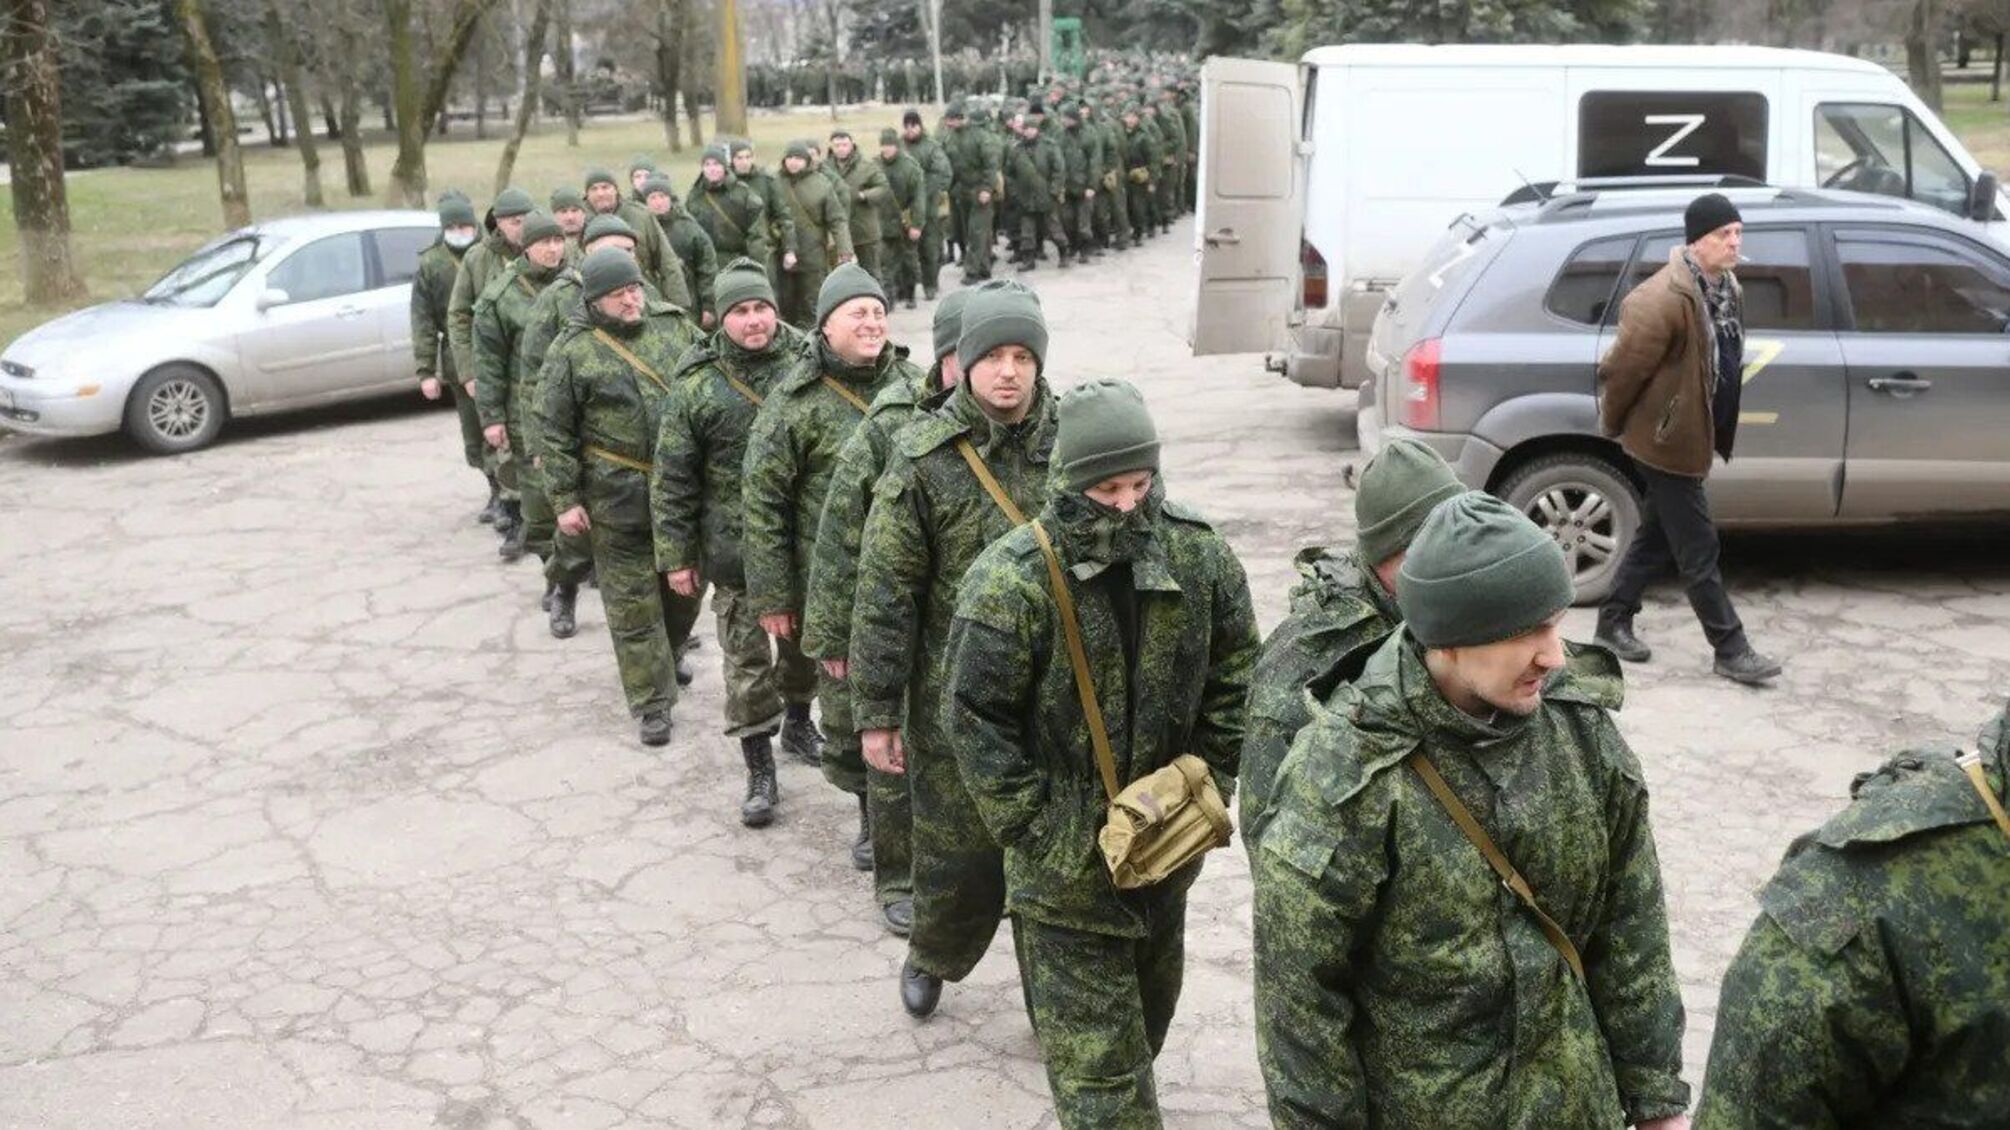 ФСБ росії обмежила виїзд військовозобов'язаних громадян із країни: що відомо